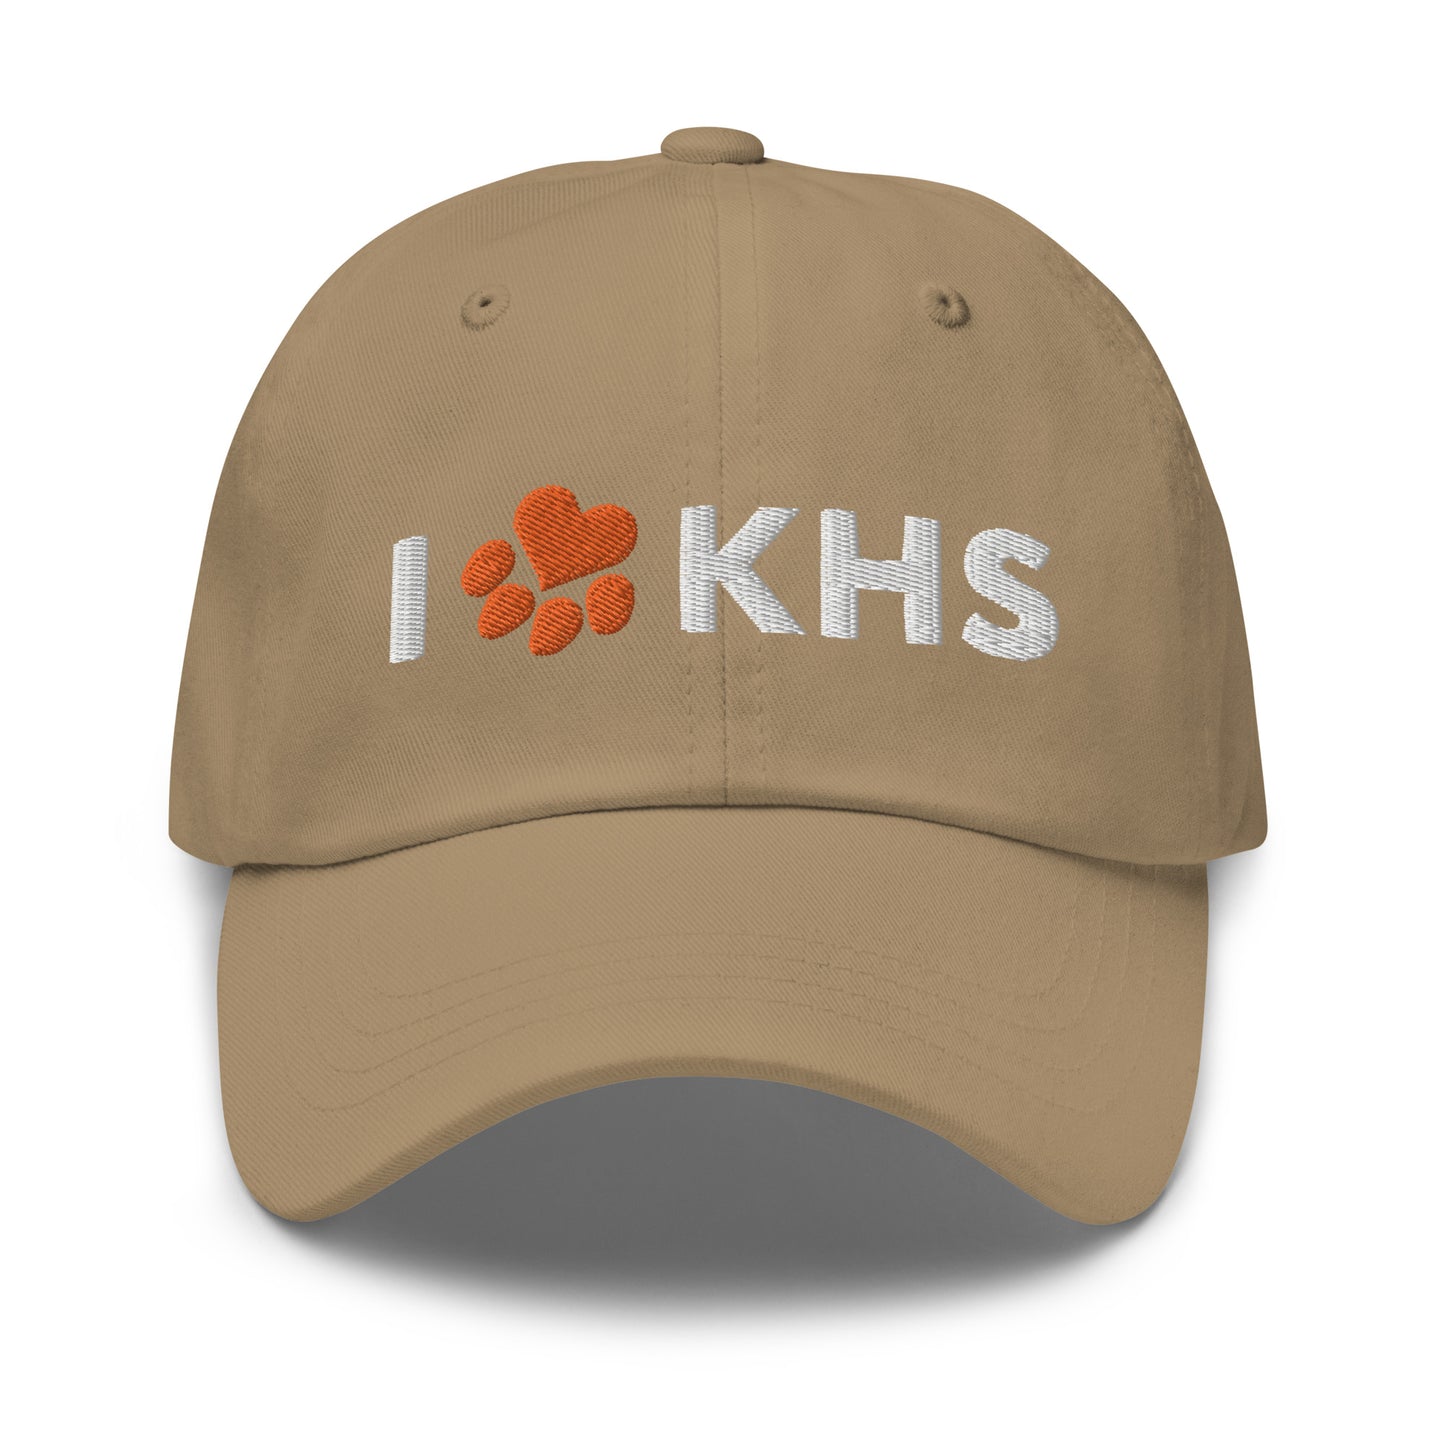 I Heart Paw KHS Hat